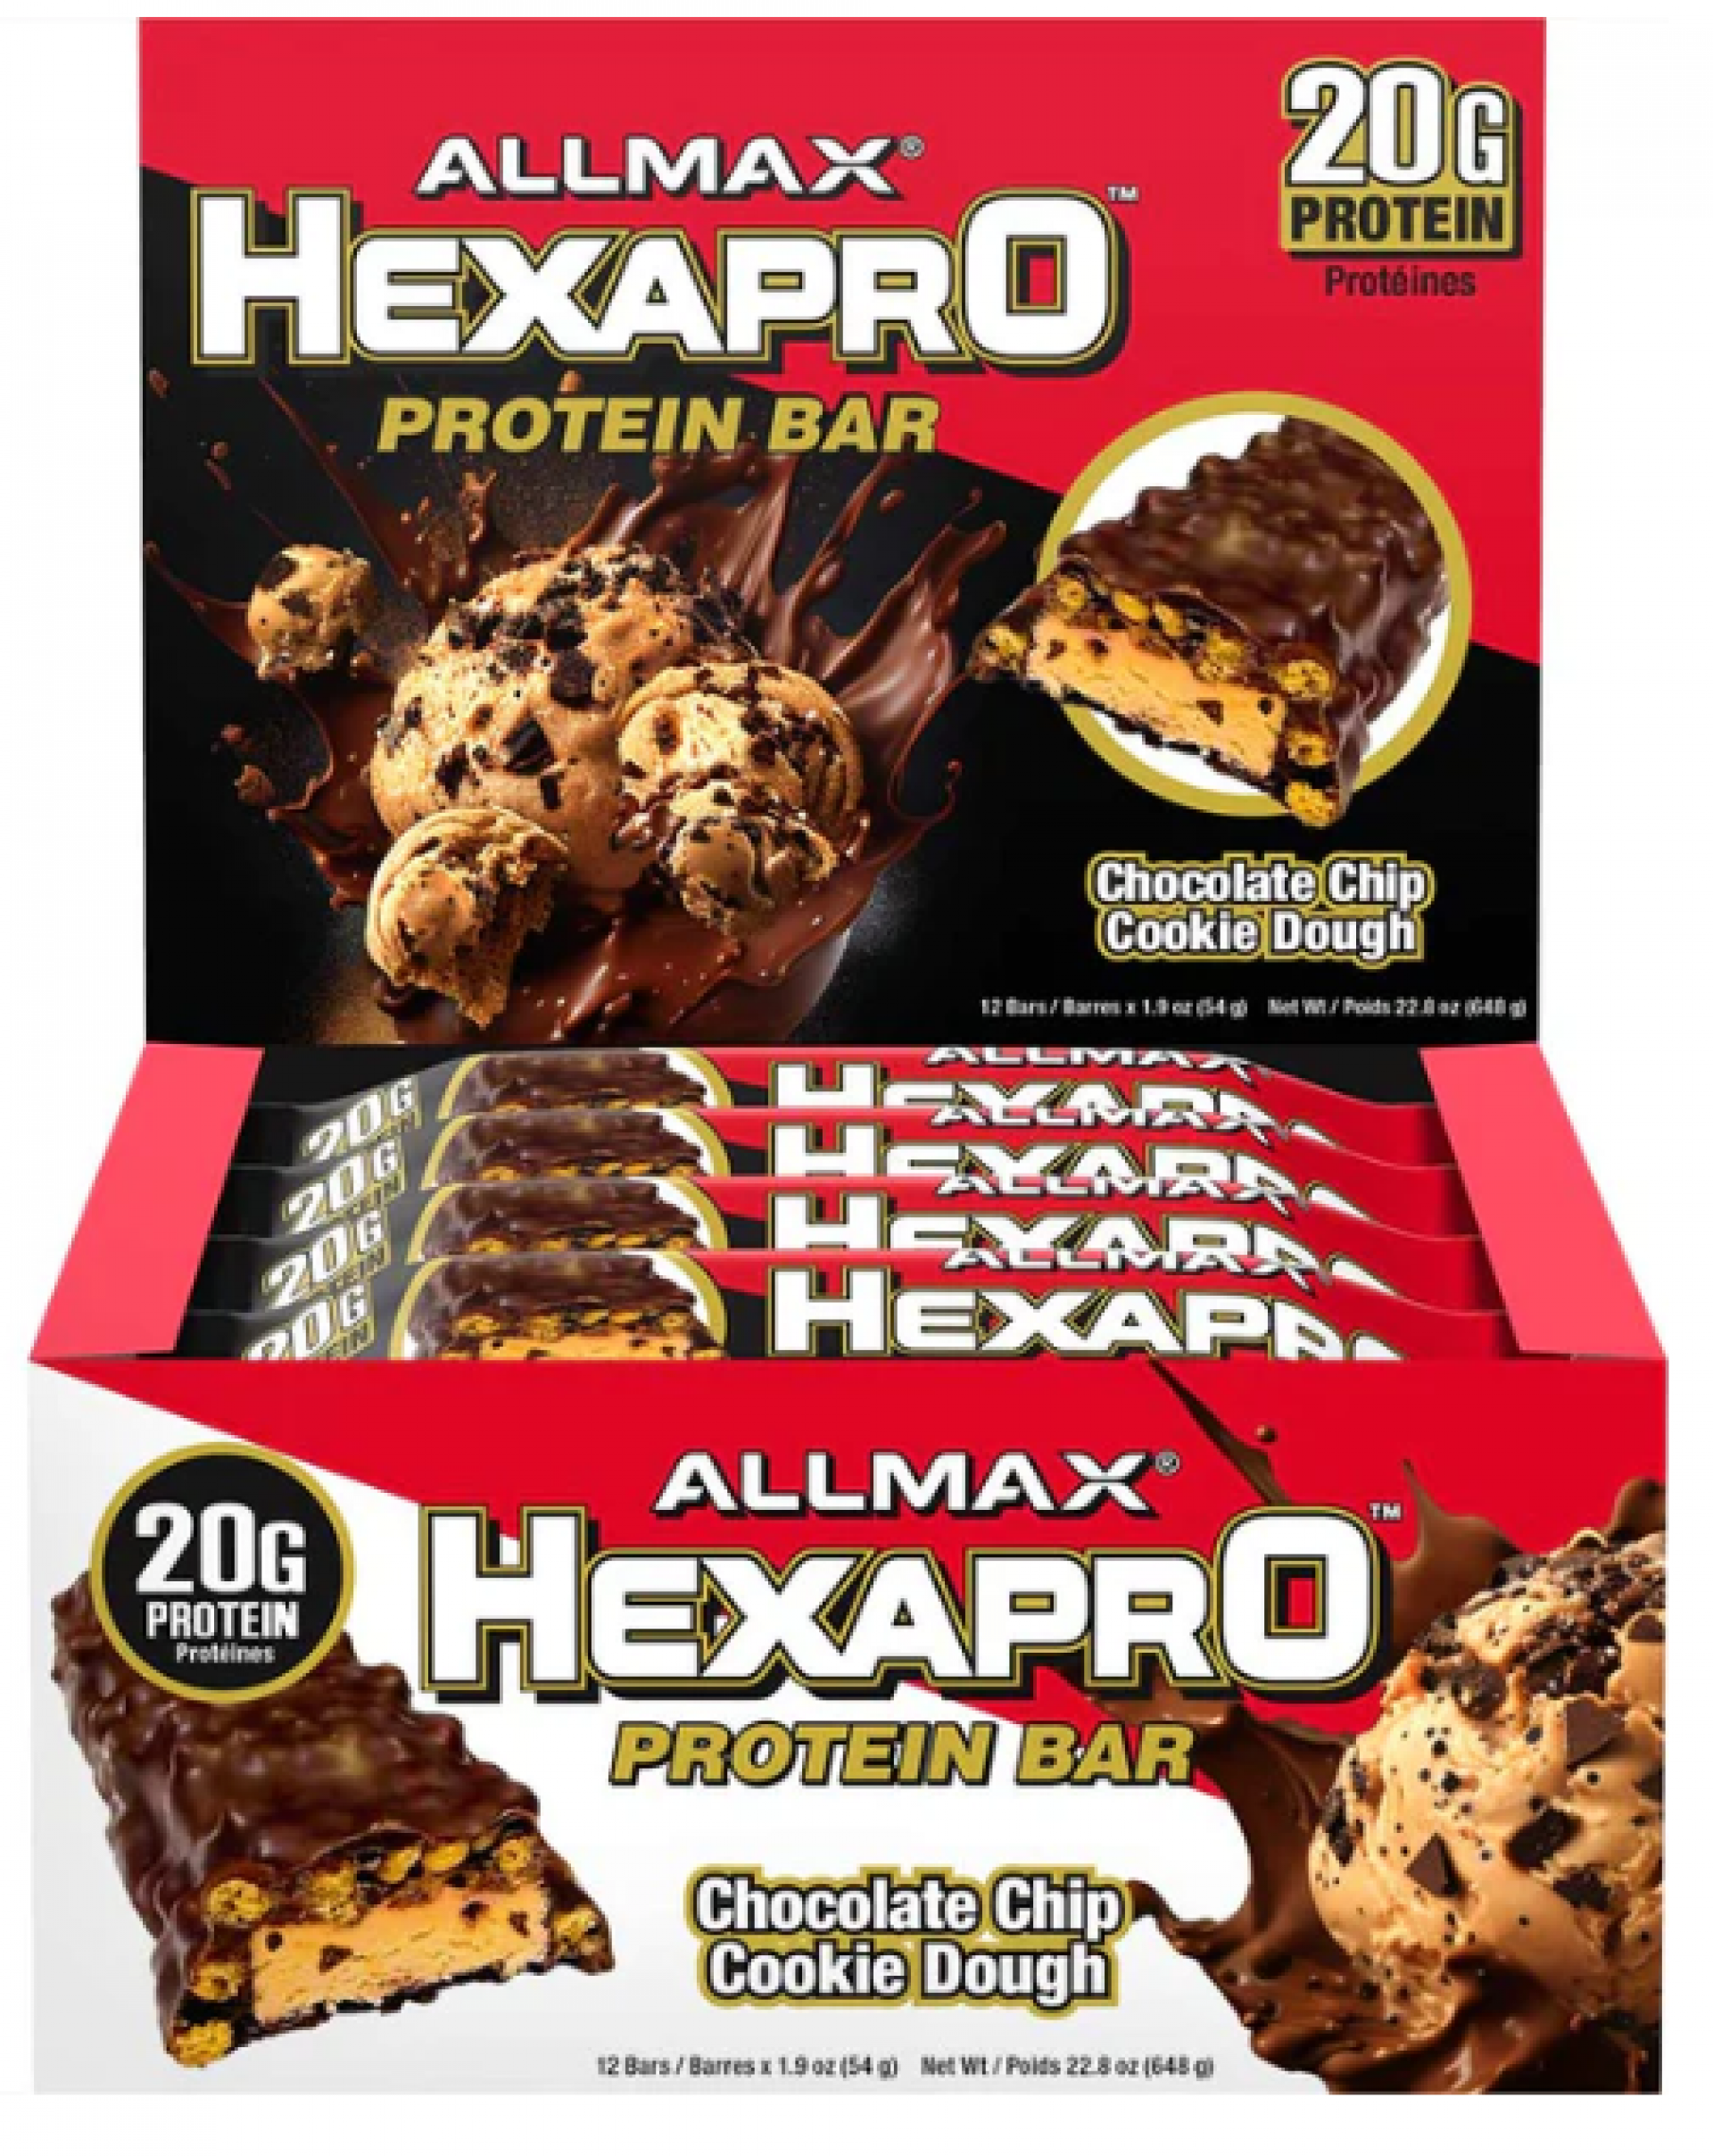 Allmax Hexapro Protein Bars - $3.99